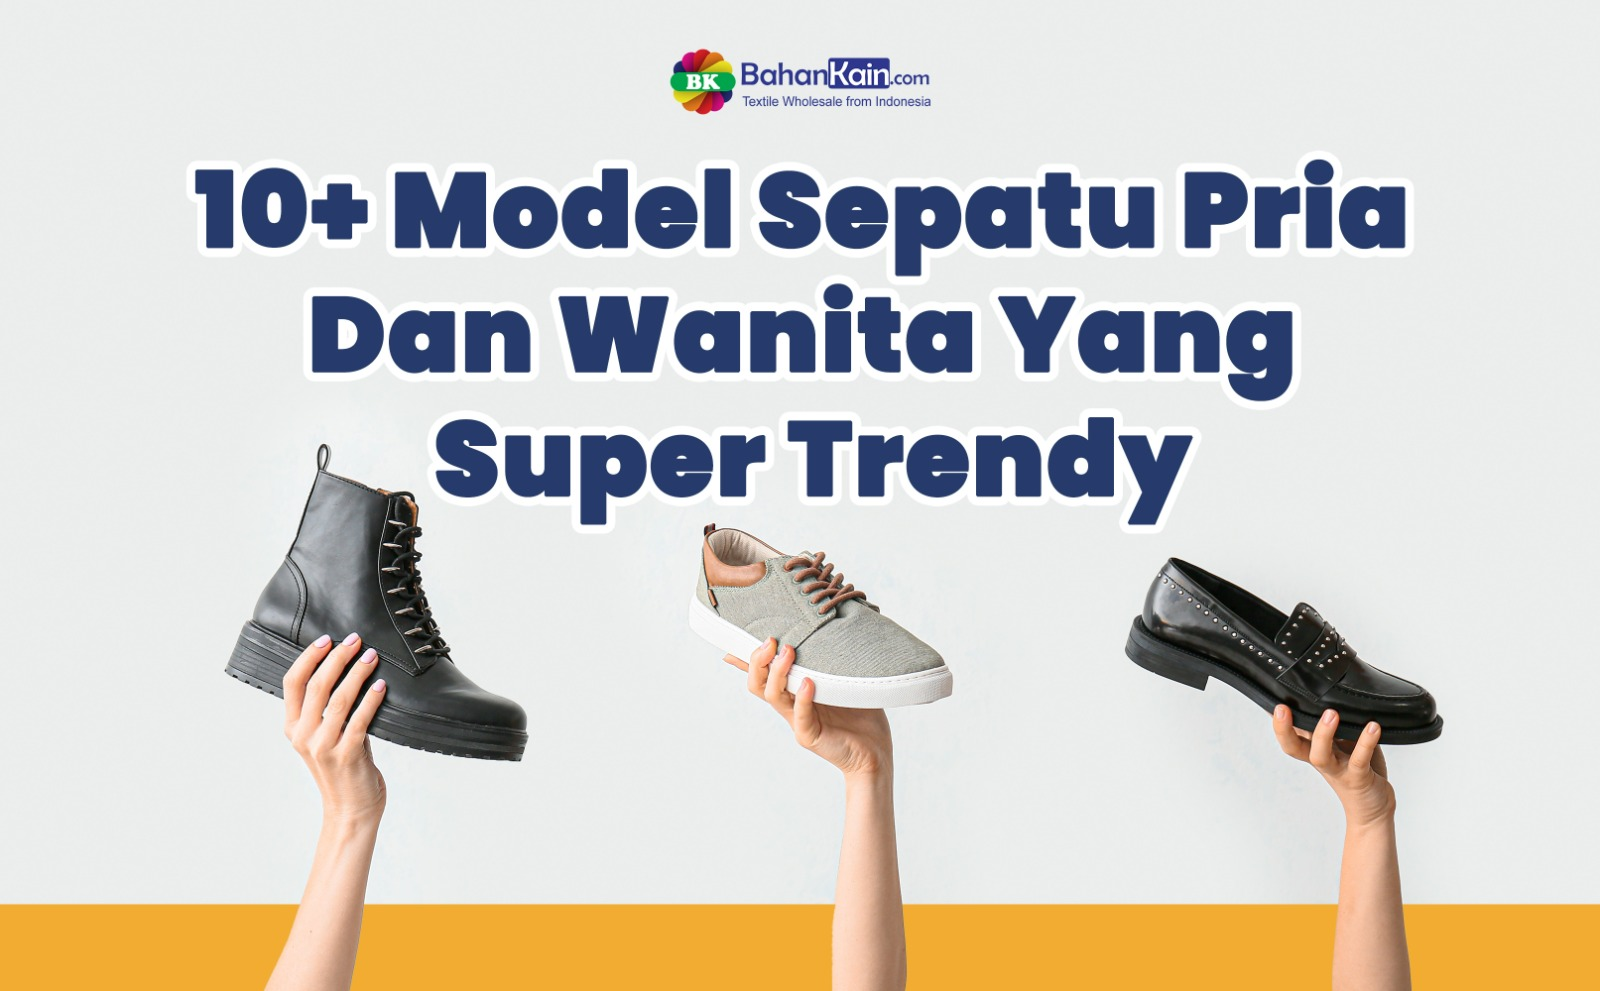 10+ Model Sepatu Pria Dan Wanita Yang Super Trendy